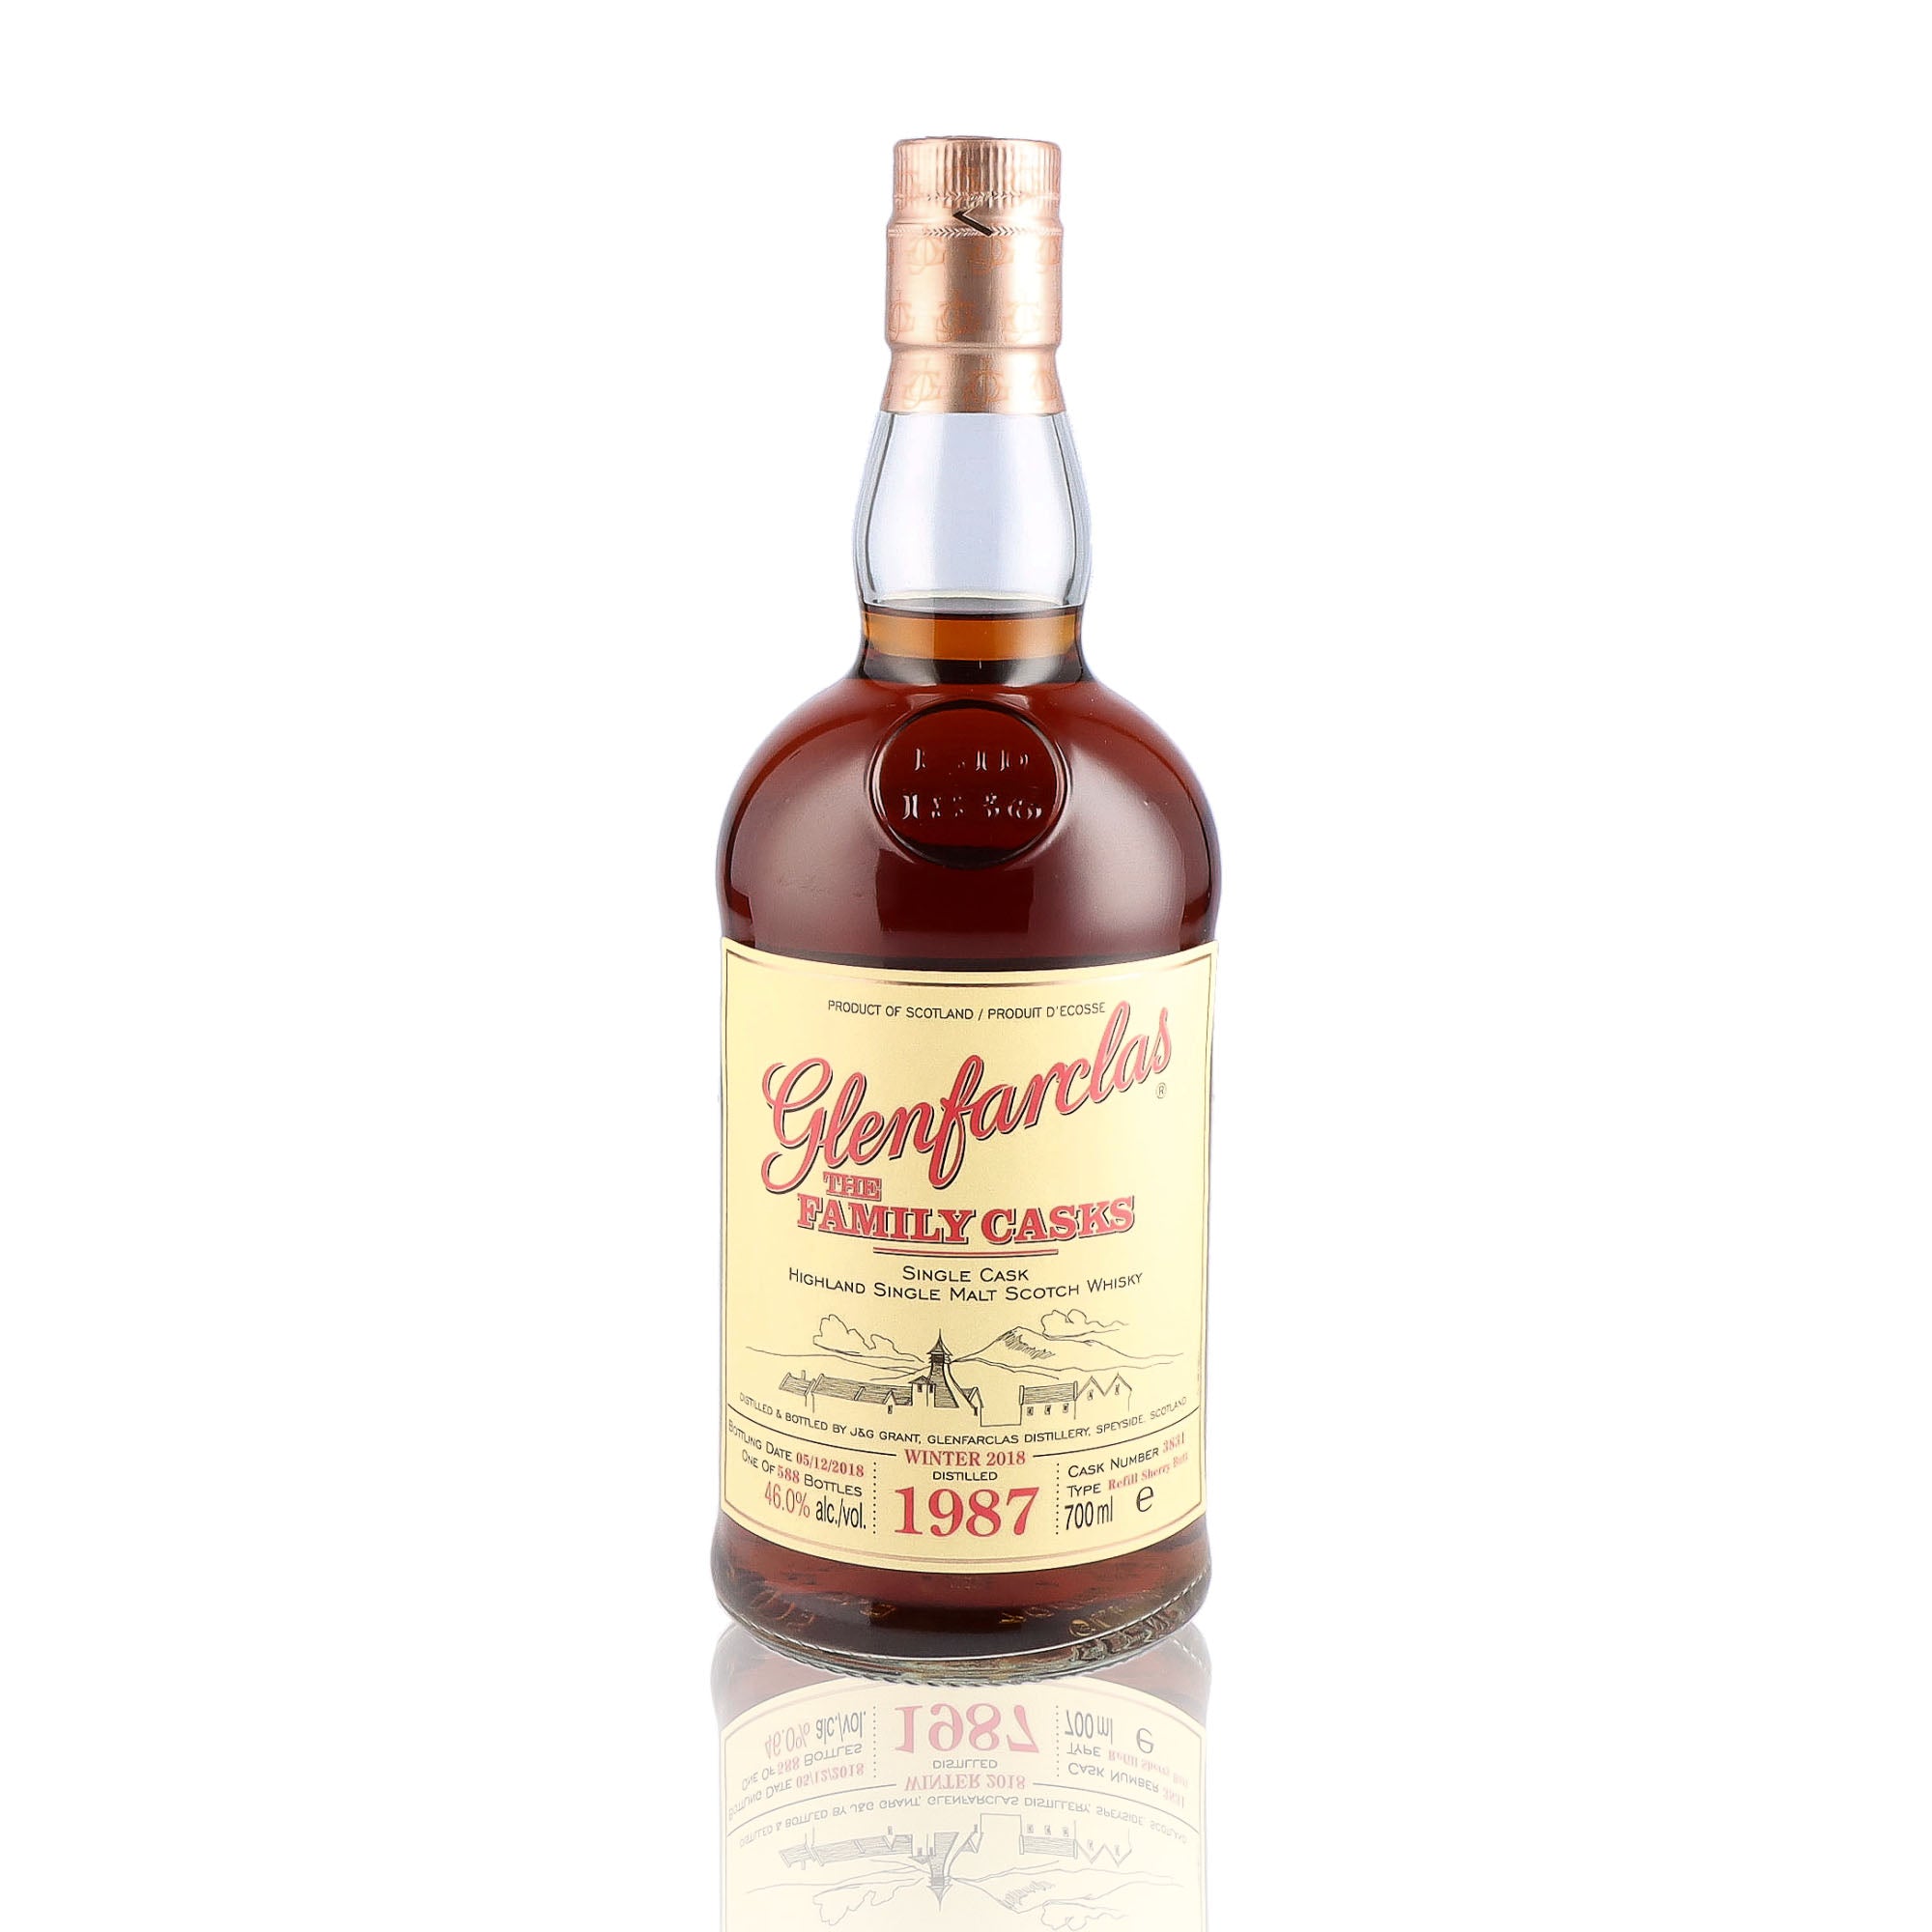 Une bouteille de Scotch Whisky Single Malt de la marque Glenfarclas, nommée The Family Casks, 31 ans d'âge, du millésime 1987.